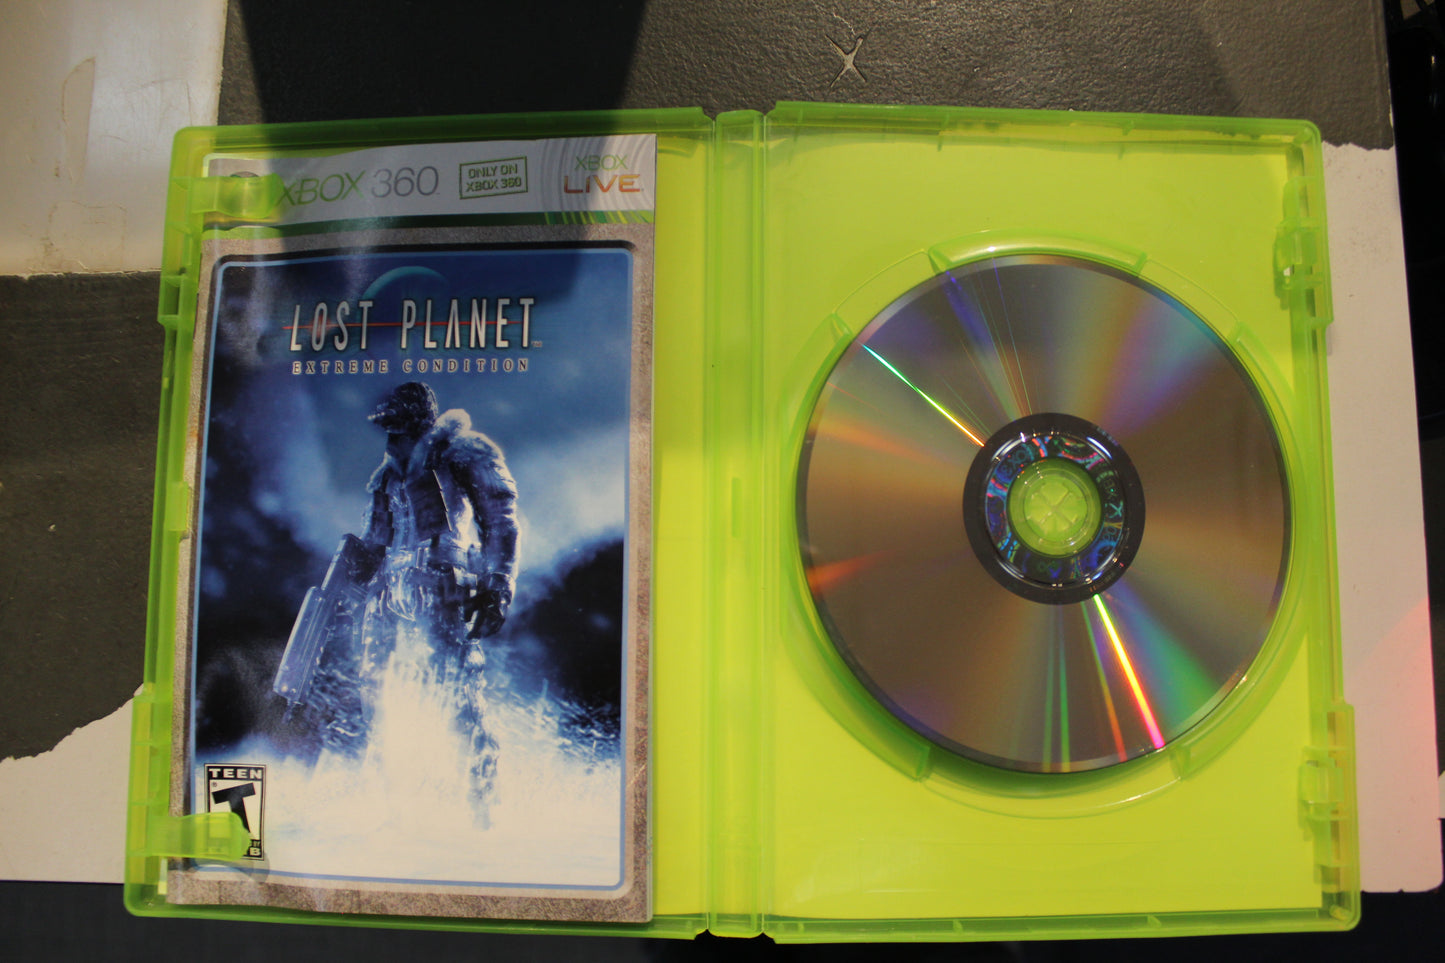 Lost Planet Extreme Condition (CIB) - Xbox 360